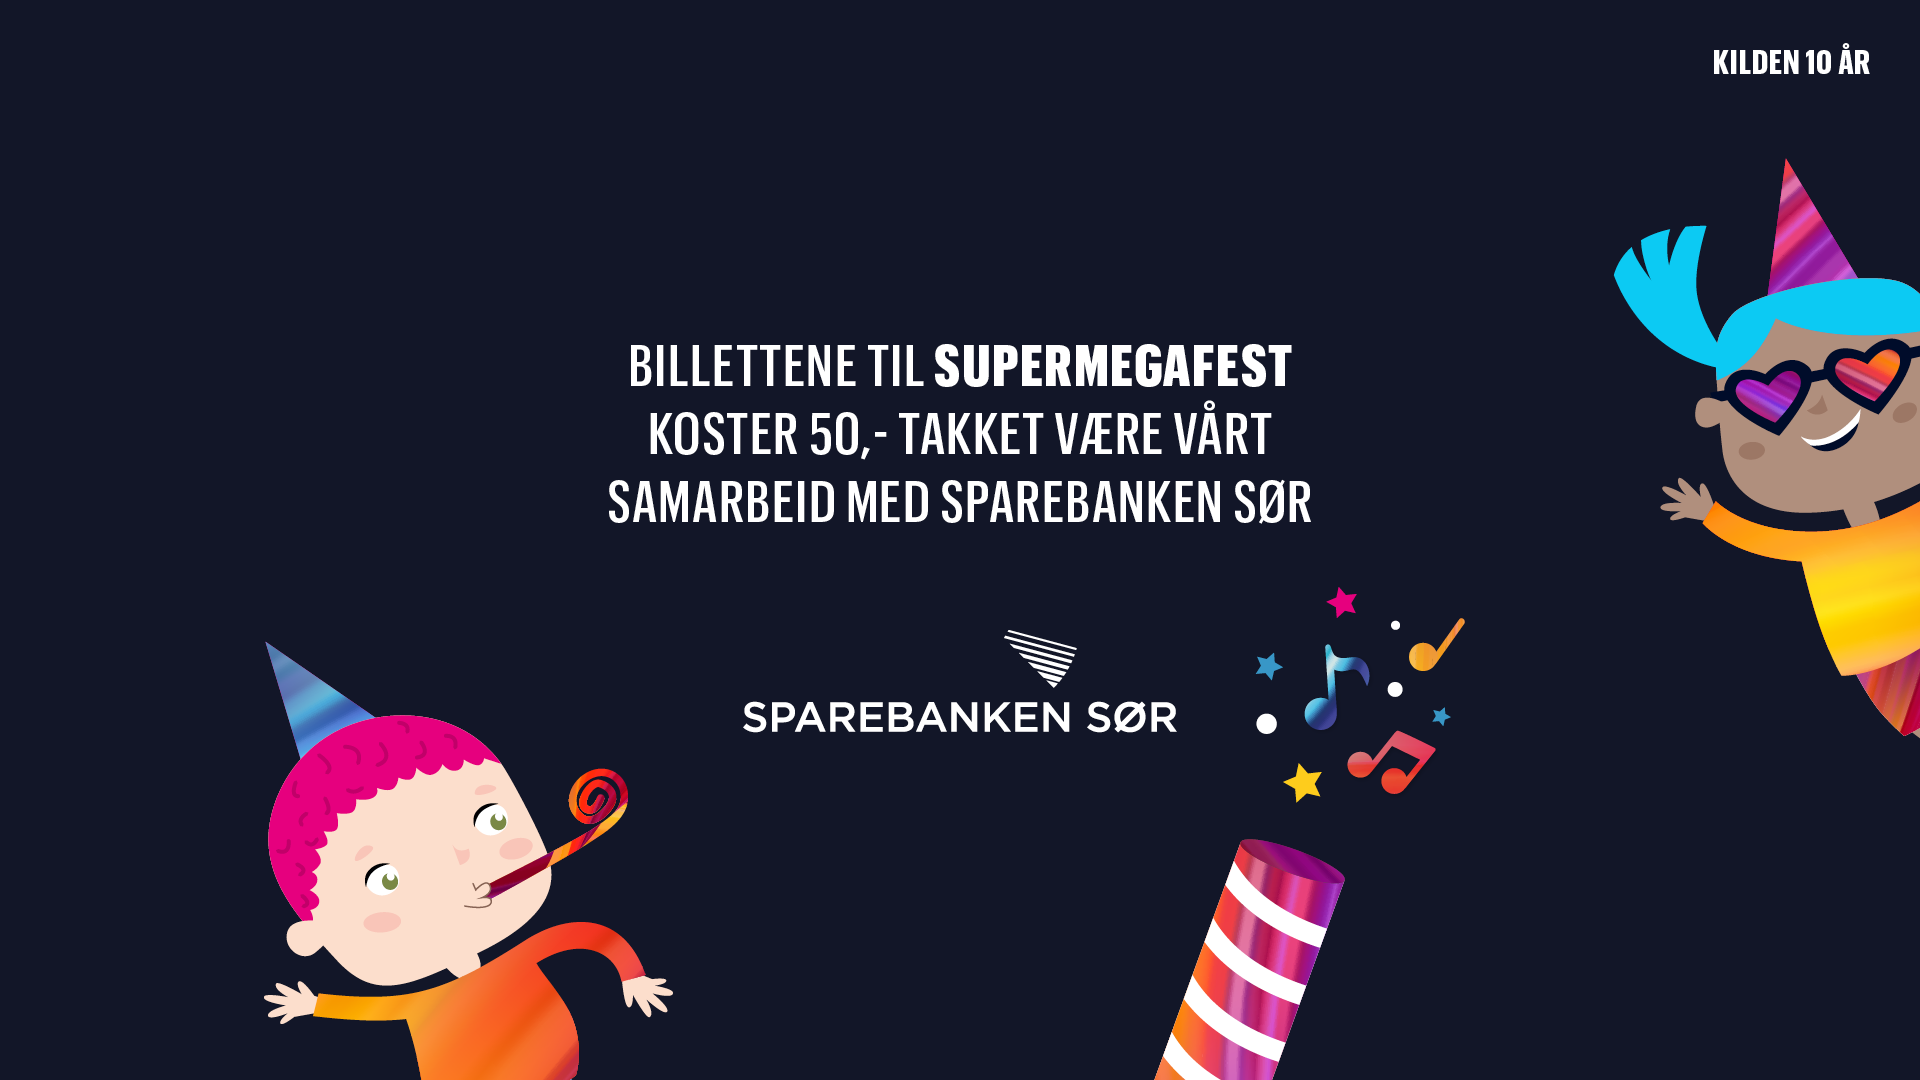 Tekstplakat: Billettene til Supermegafest koster 50,- takket være vårt samarbeid med Sparebanken Sør